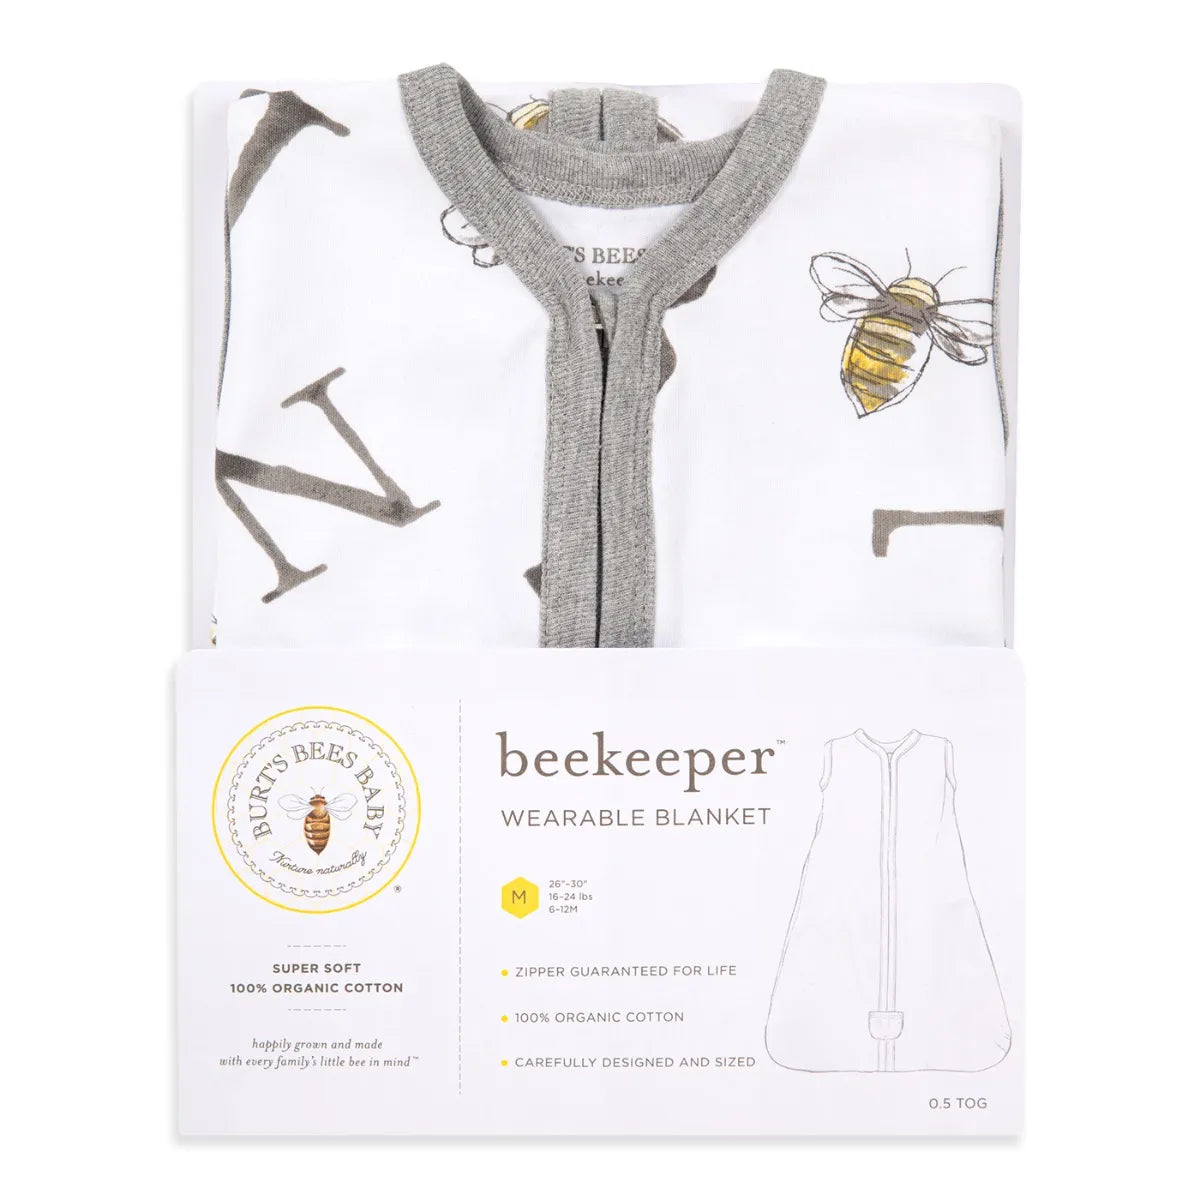 A-Bee-C Organic Beekeeper Sleep Sack